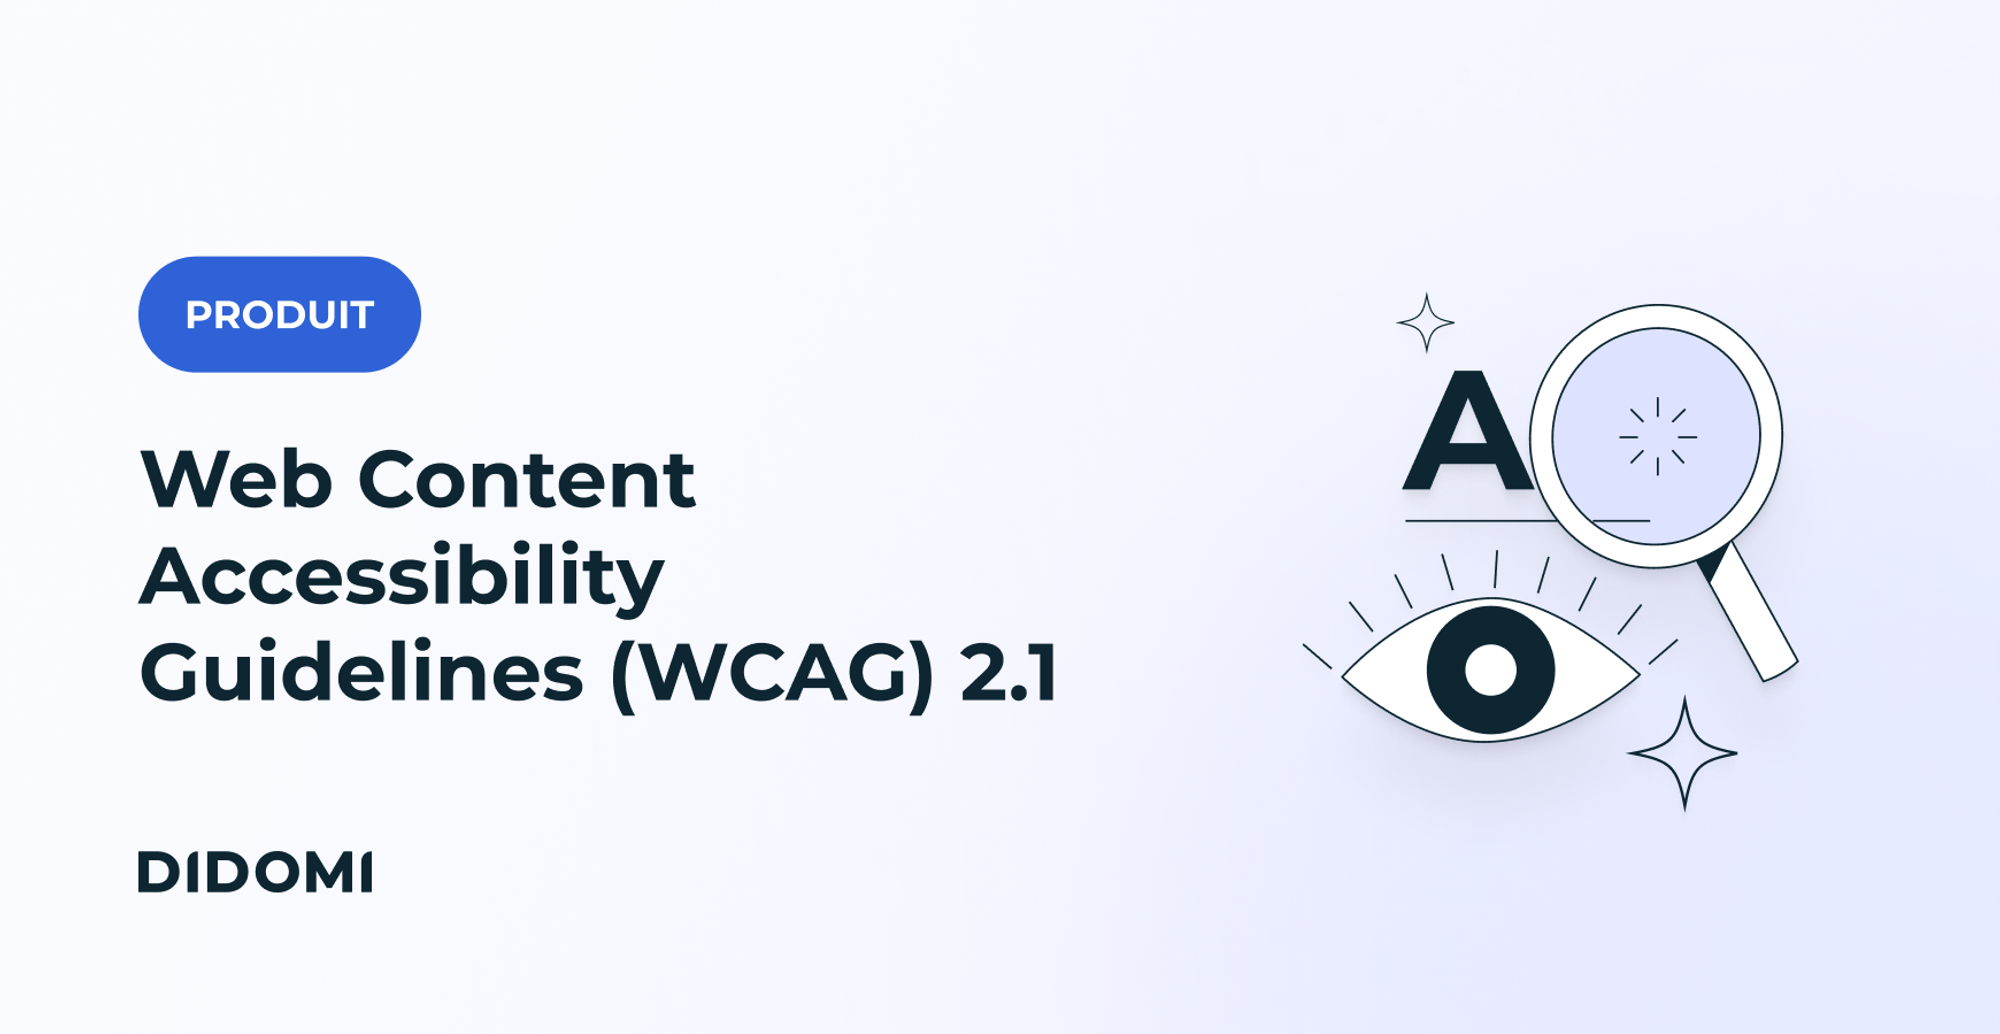 Sur le côté gauche de l'image, la balise "Product" et le titre "Web Content Accessibility Guidelines (WCAG) 2.1". Sur le côté droit, le dessin d'un œil, la lettre A et une loupe pour illustrer l'accessibilité.